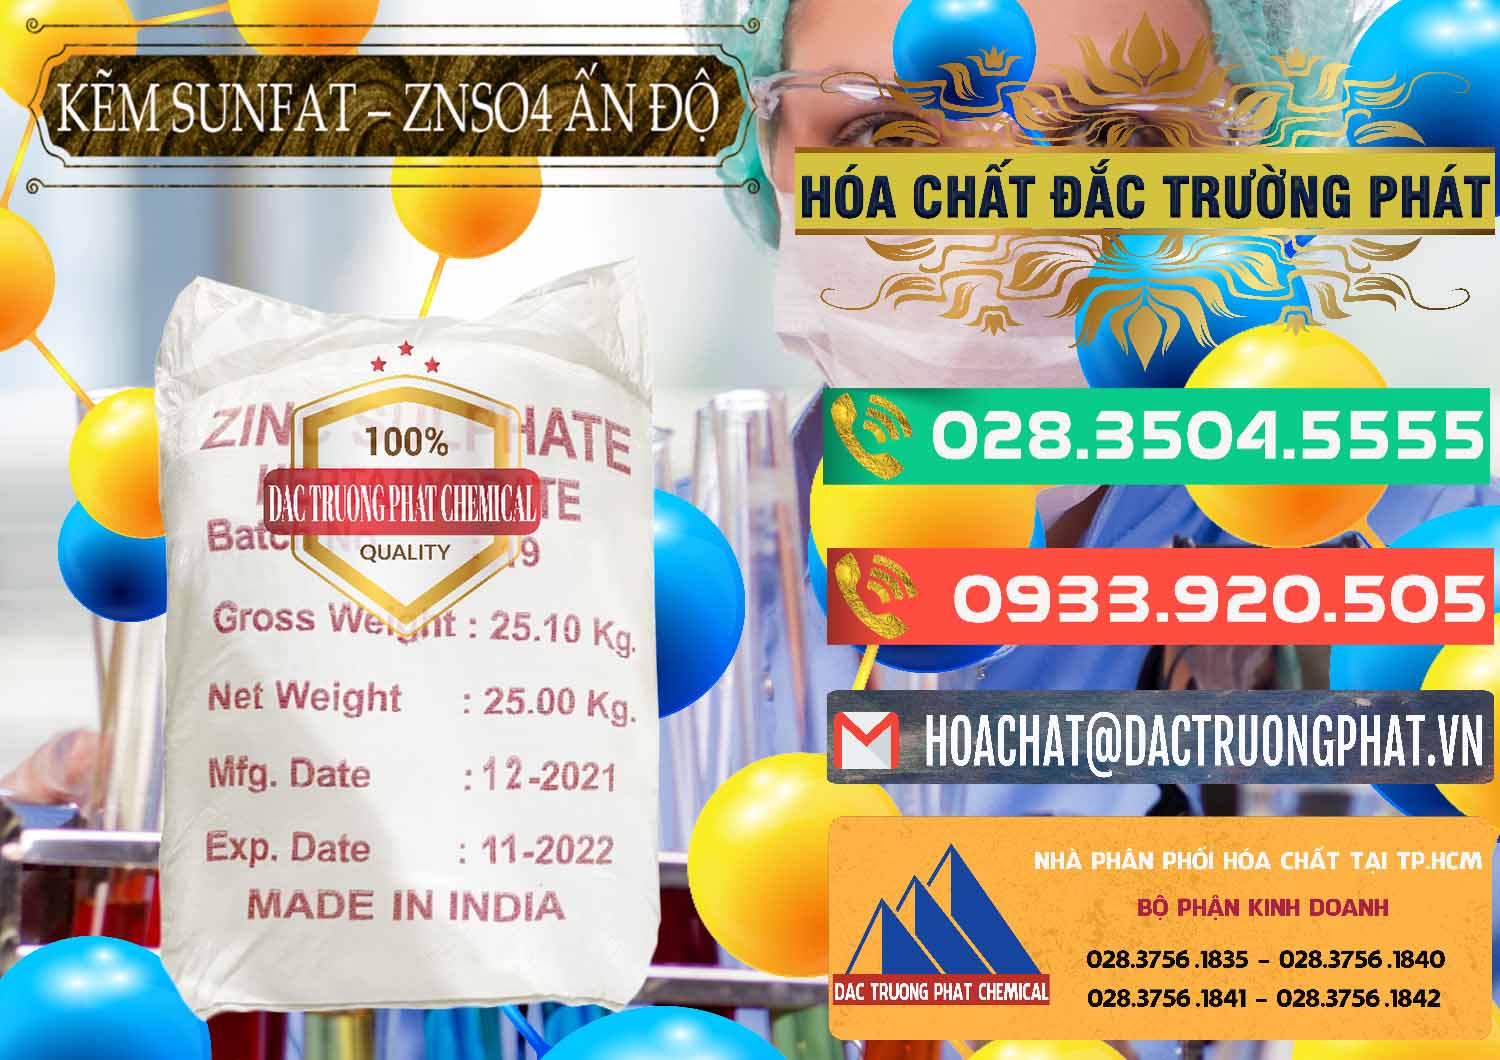 Cty chuyên cung ứng ( bán ) Kẽm Sunfat – ZNSO4.7H2O Ấn Độ India - 0417 - Công ty chuyên cung cấp _ kinh doanh hóa chất tại TP.HCM - congtyhoachat.com.vn